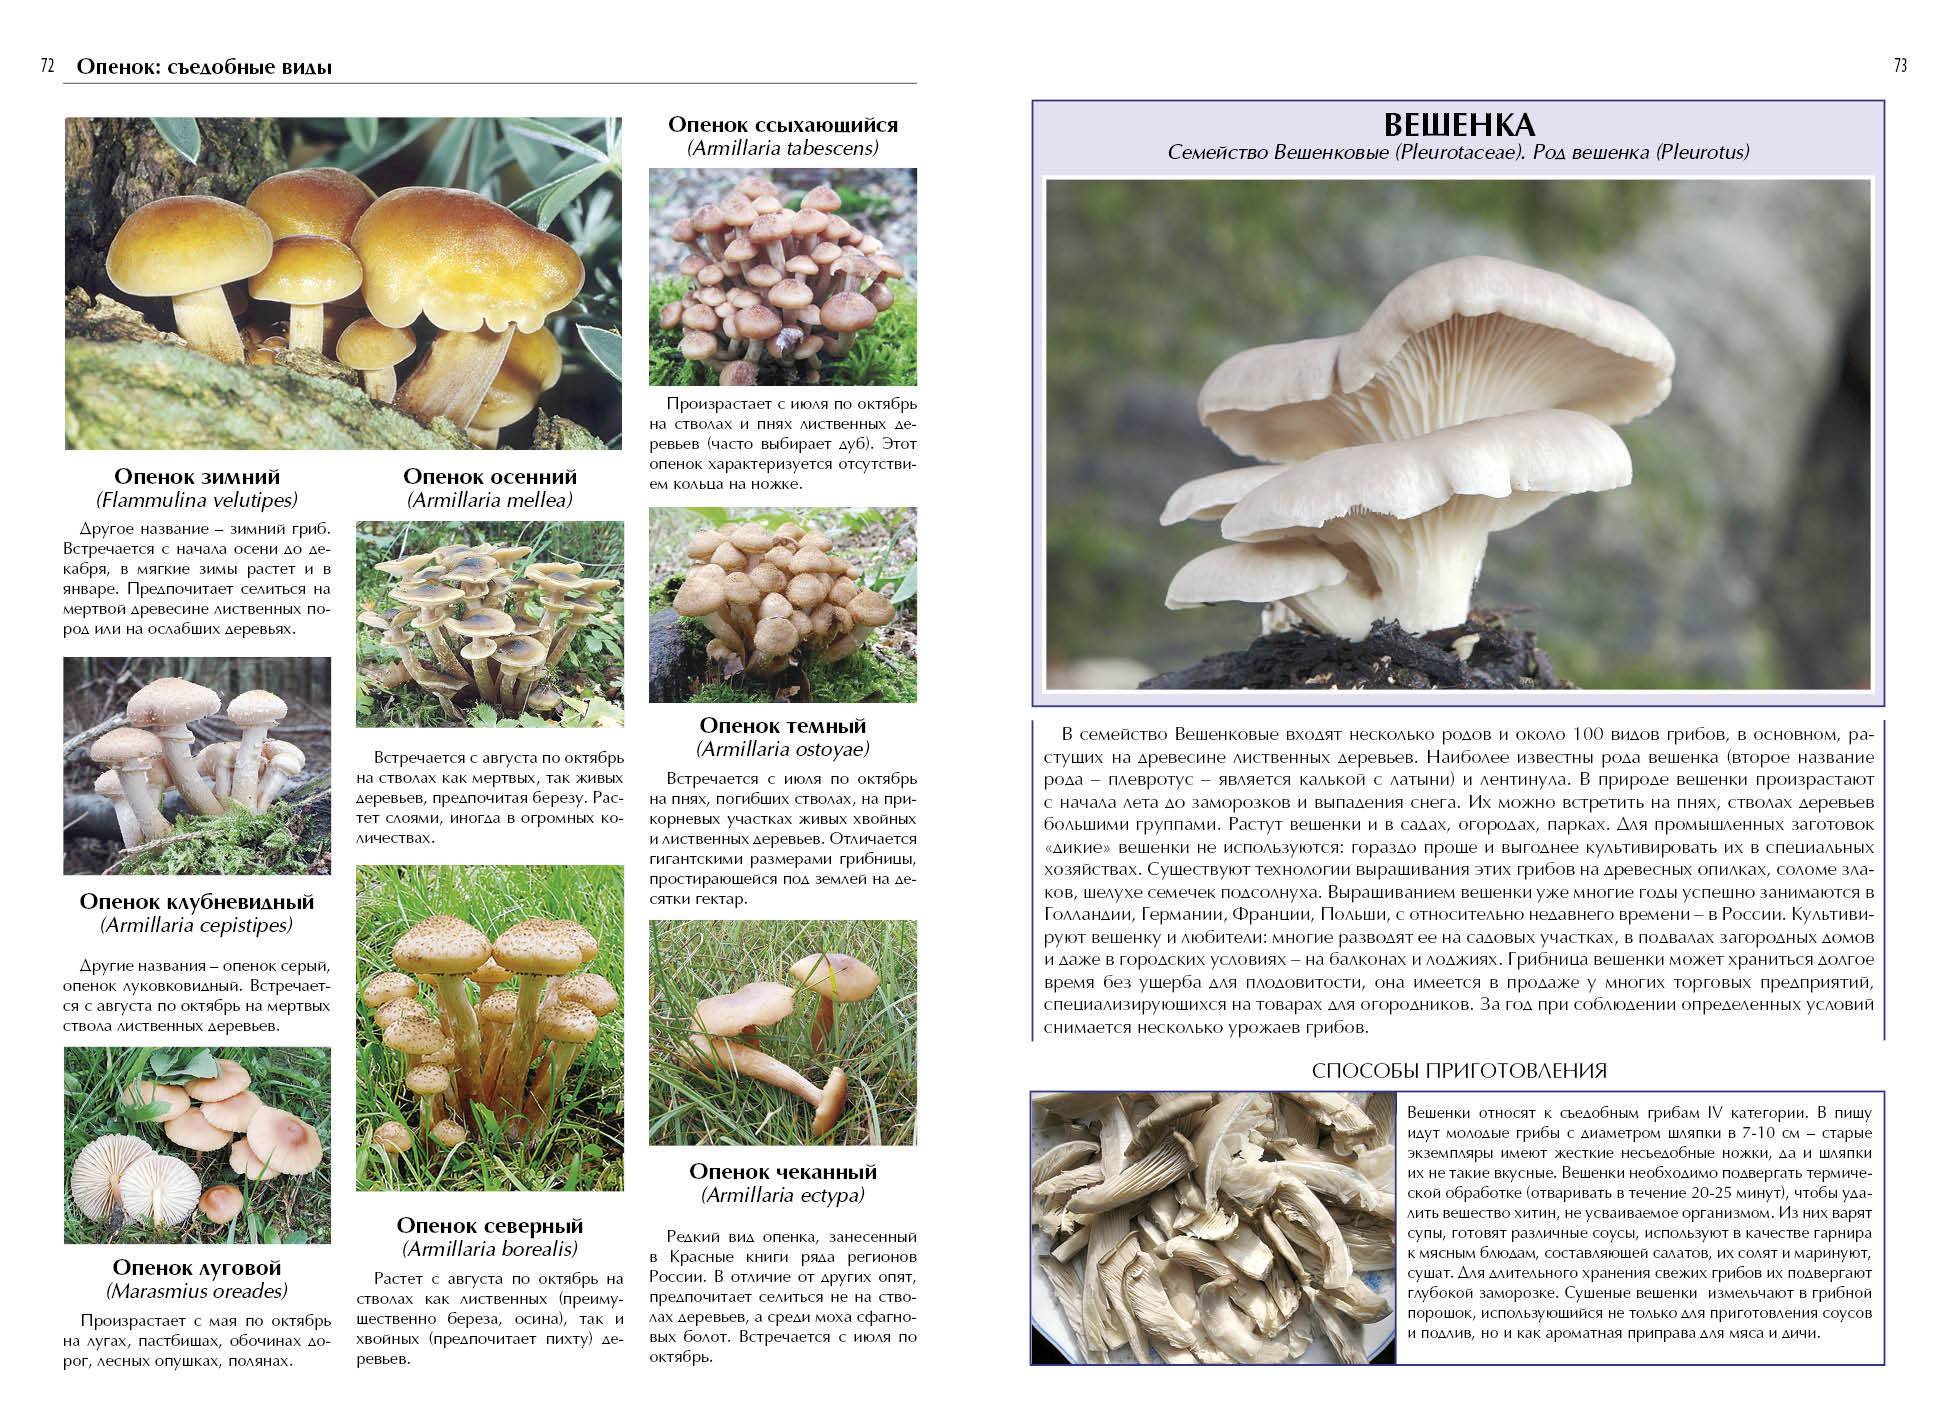 Печеночный гриб, тёщин язык или печеночница обыкновенная: фото, описание и рецепты приготовления